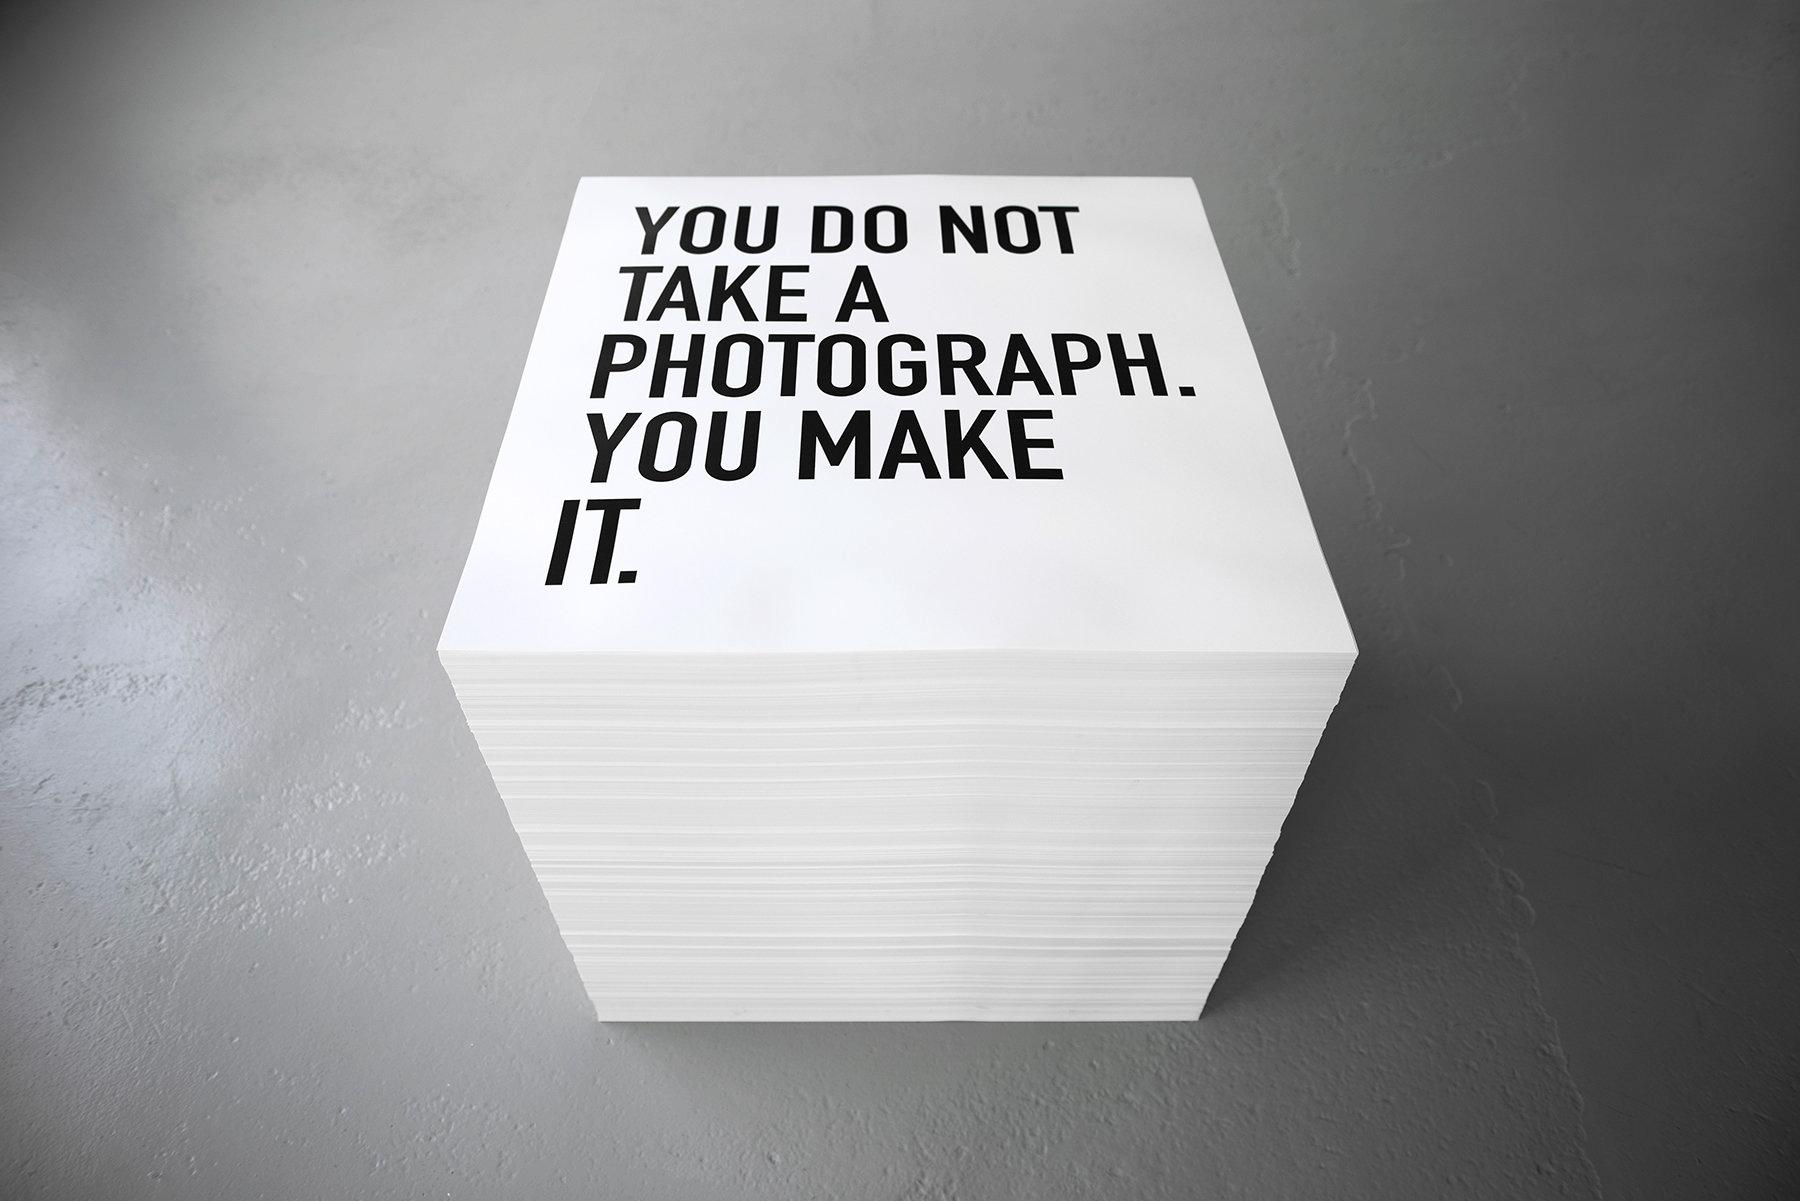 Alfredo Jaar arbetar ofta med trycksaker: "Du tar inte ett fotografi, du gör det" gjordes 2013. Pressbild.